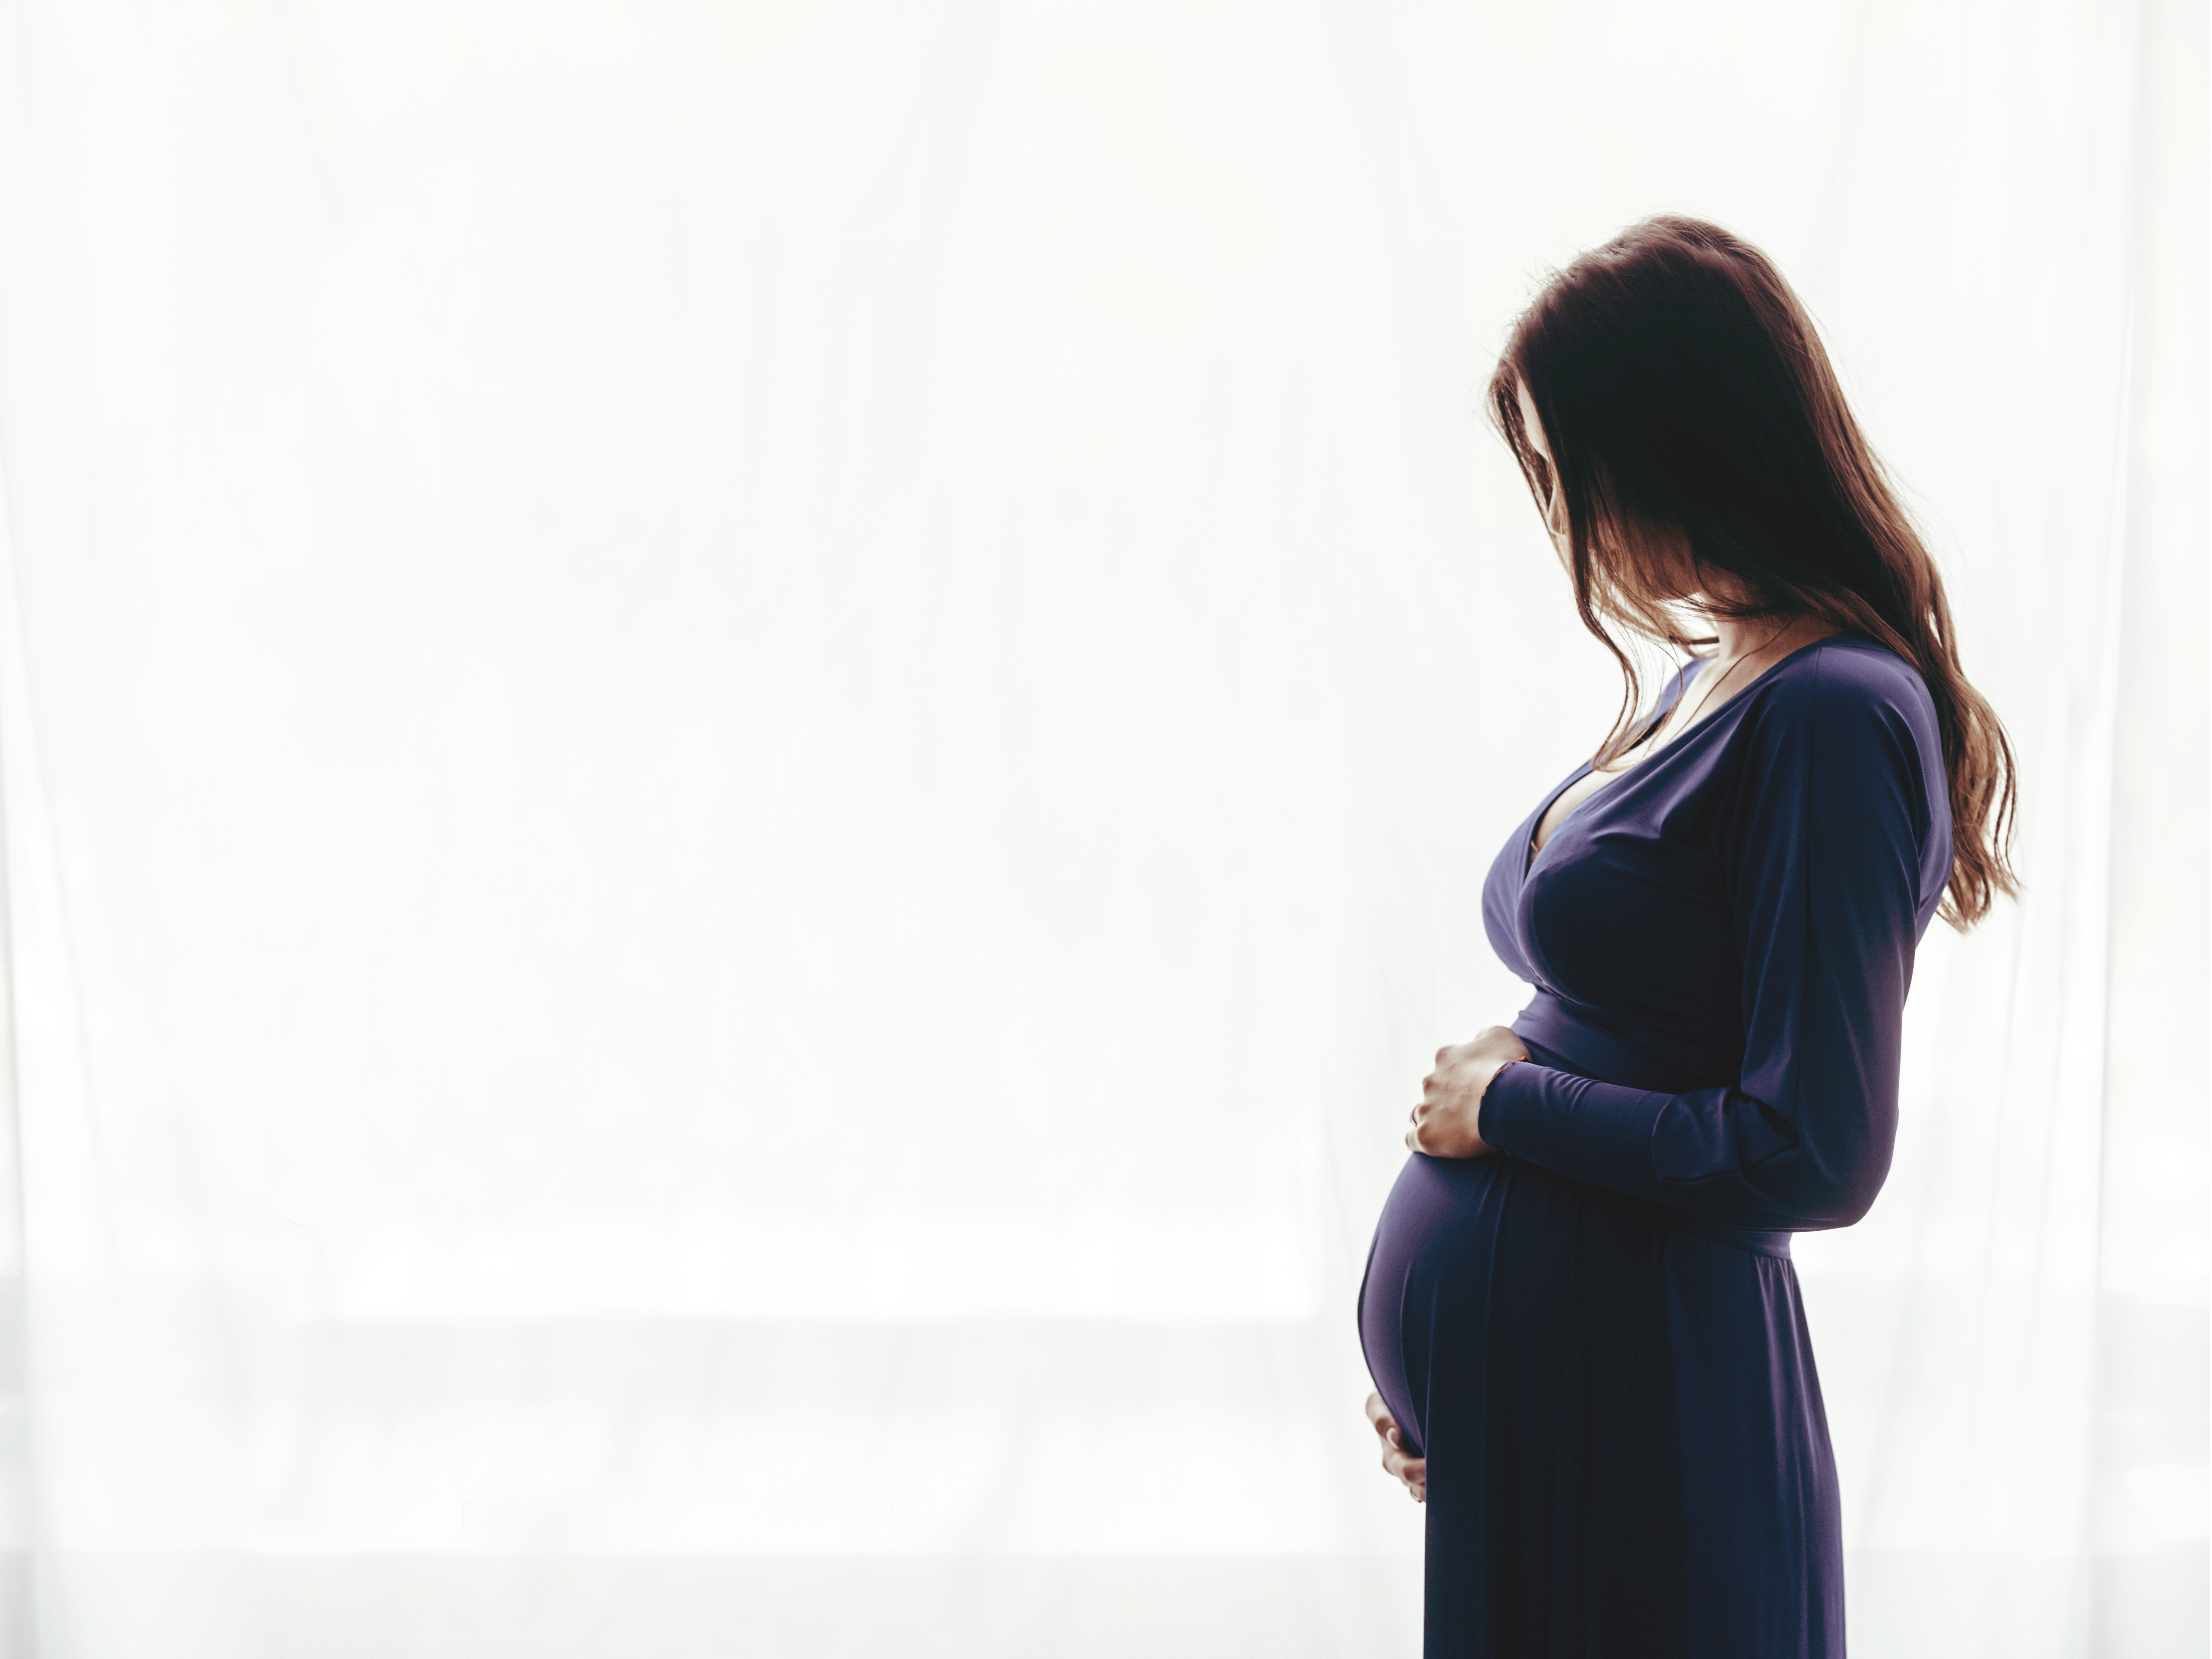 Eine schwangere Frau, die ihren Babybauch wiegt | Quelle: Shutterstock